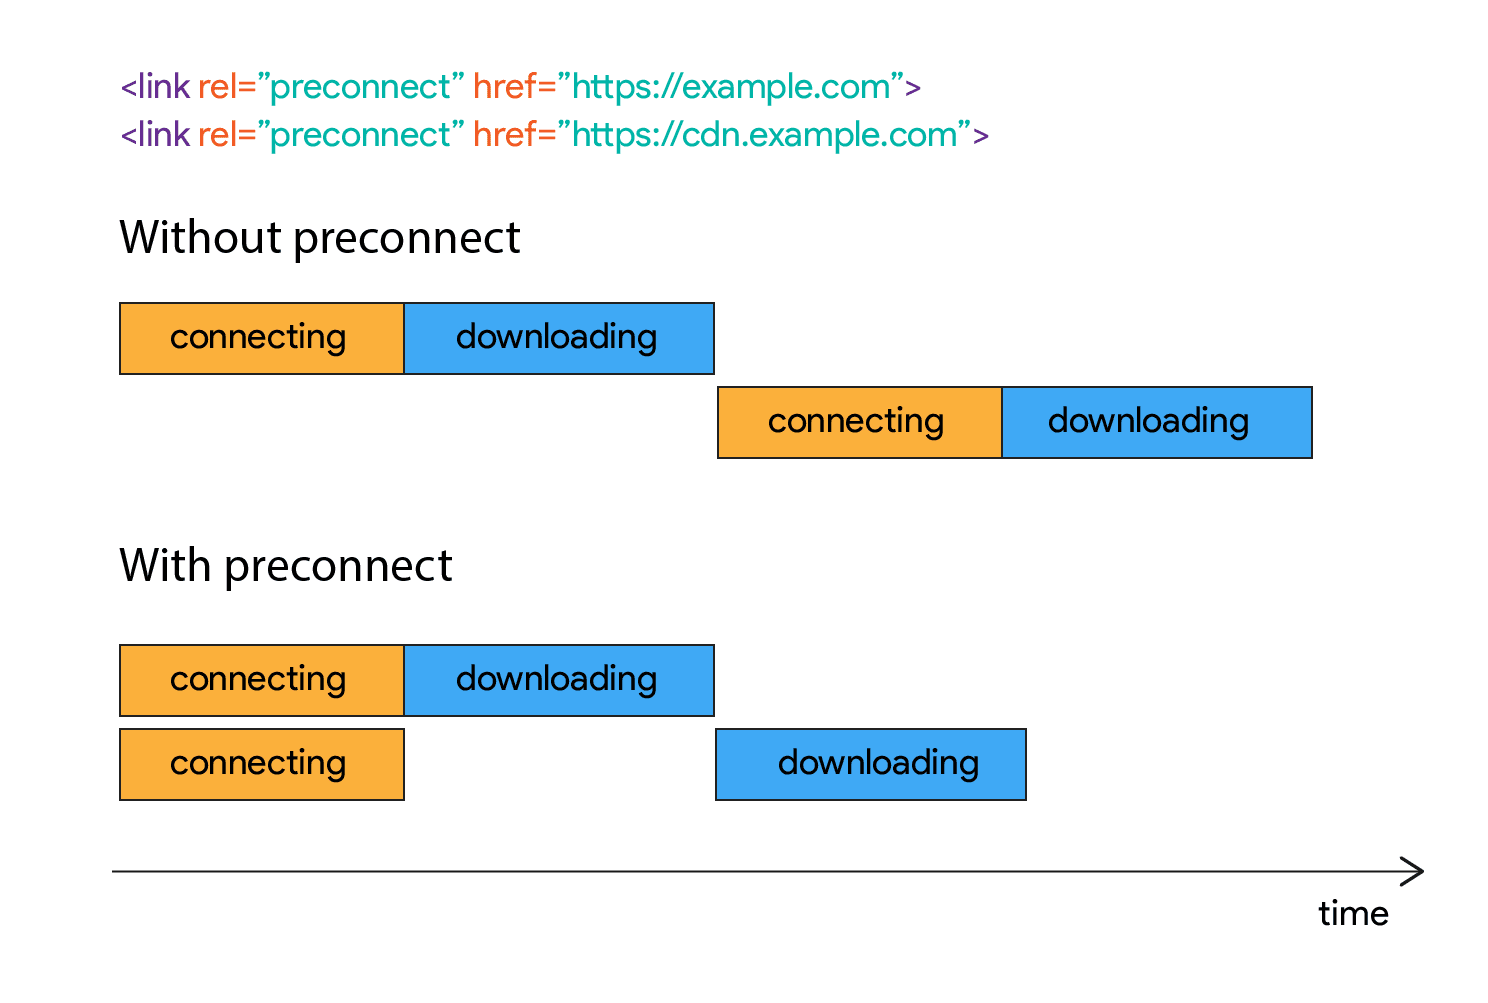 接続が確立されてからダウンロードがしばらく開始されないことを示す図。